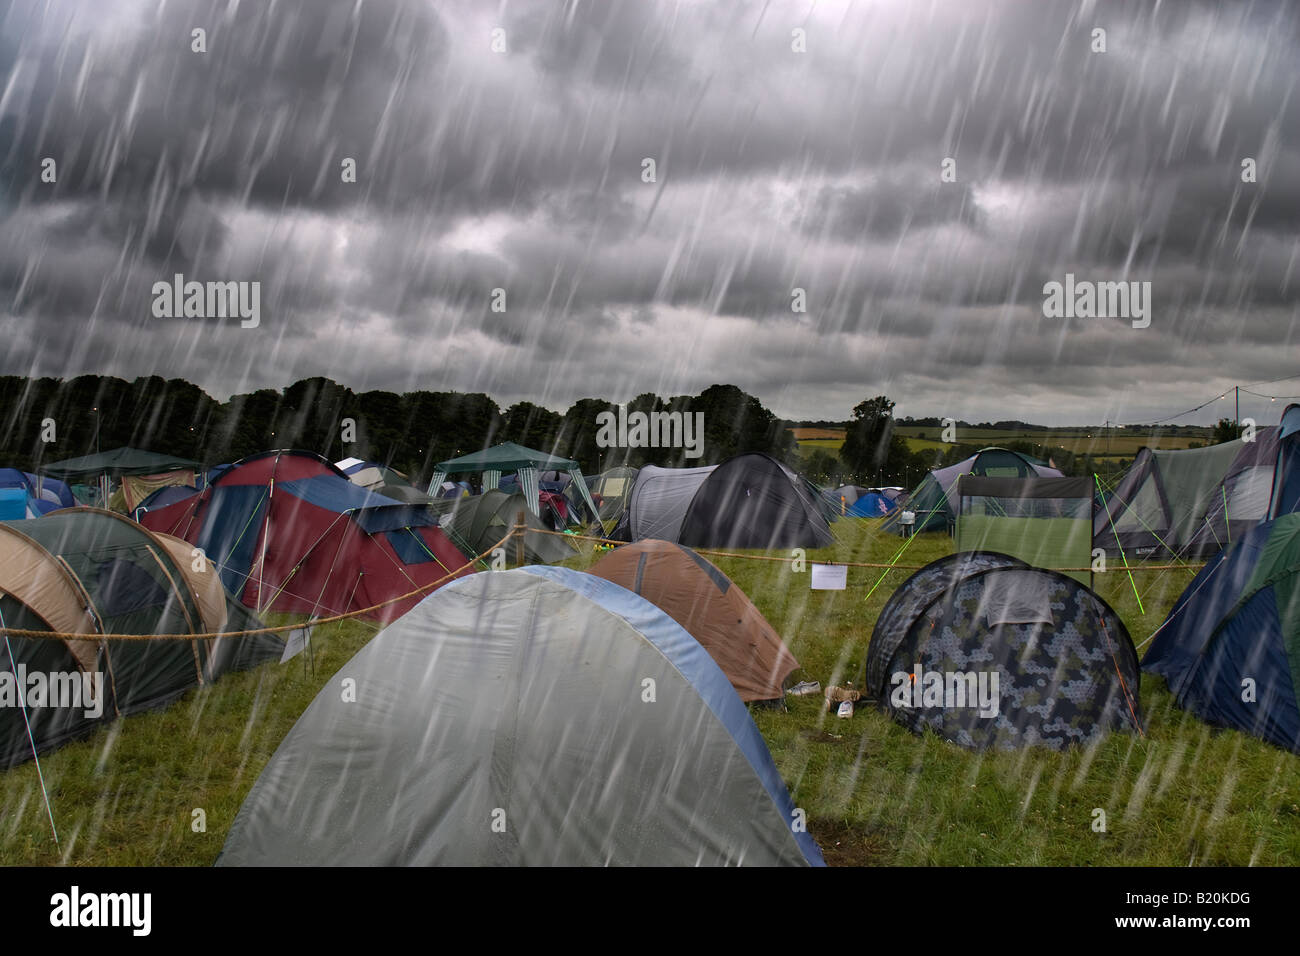 Dunkle Wolken am Himmel mit sintflutartigen Regen Zelten auf einem  Campingplatz beim Cornbury Music Festival Stockfotografie - Alamy